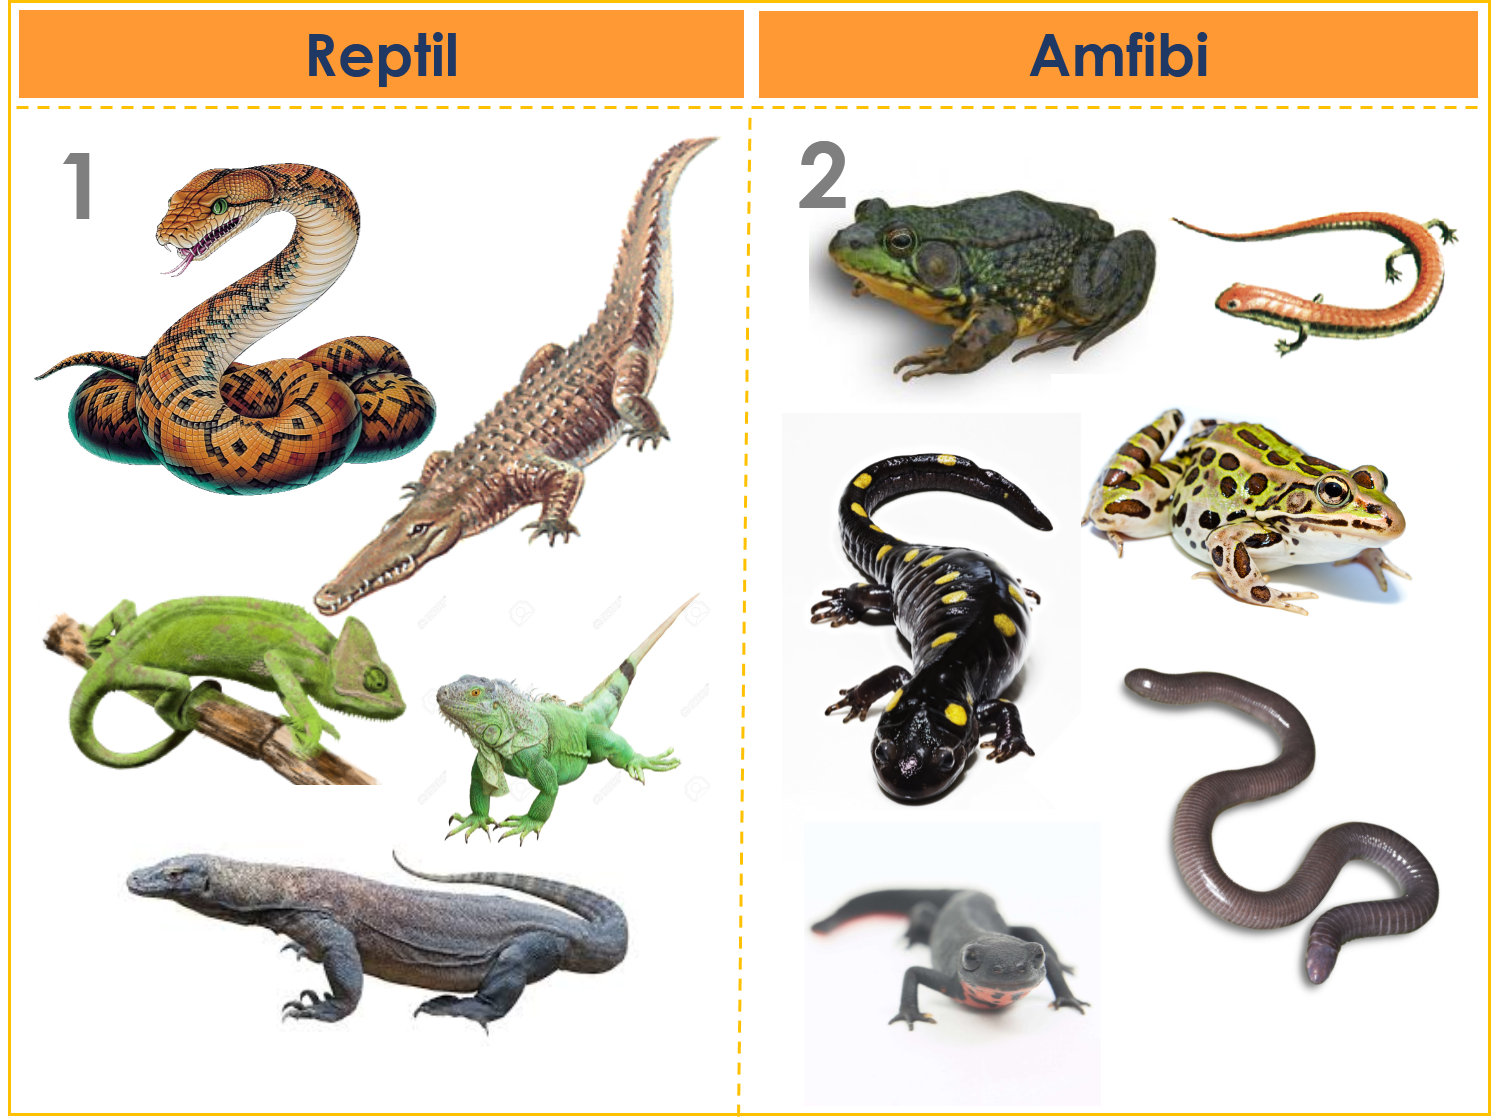 Reptil sebagai peliharaan ??? why nott